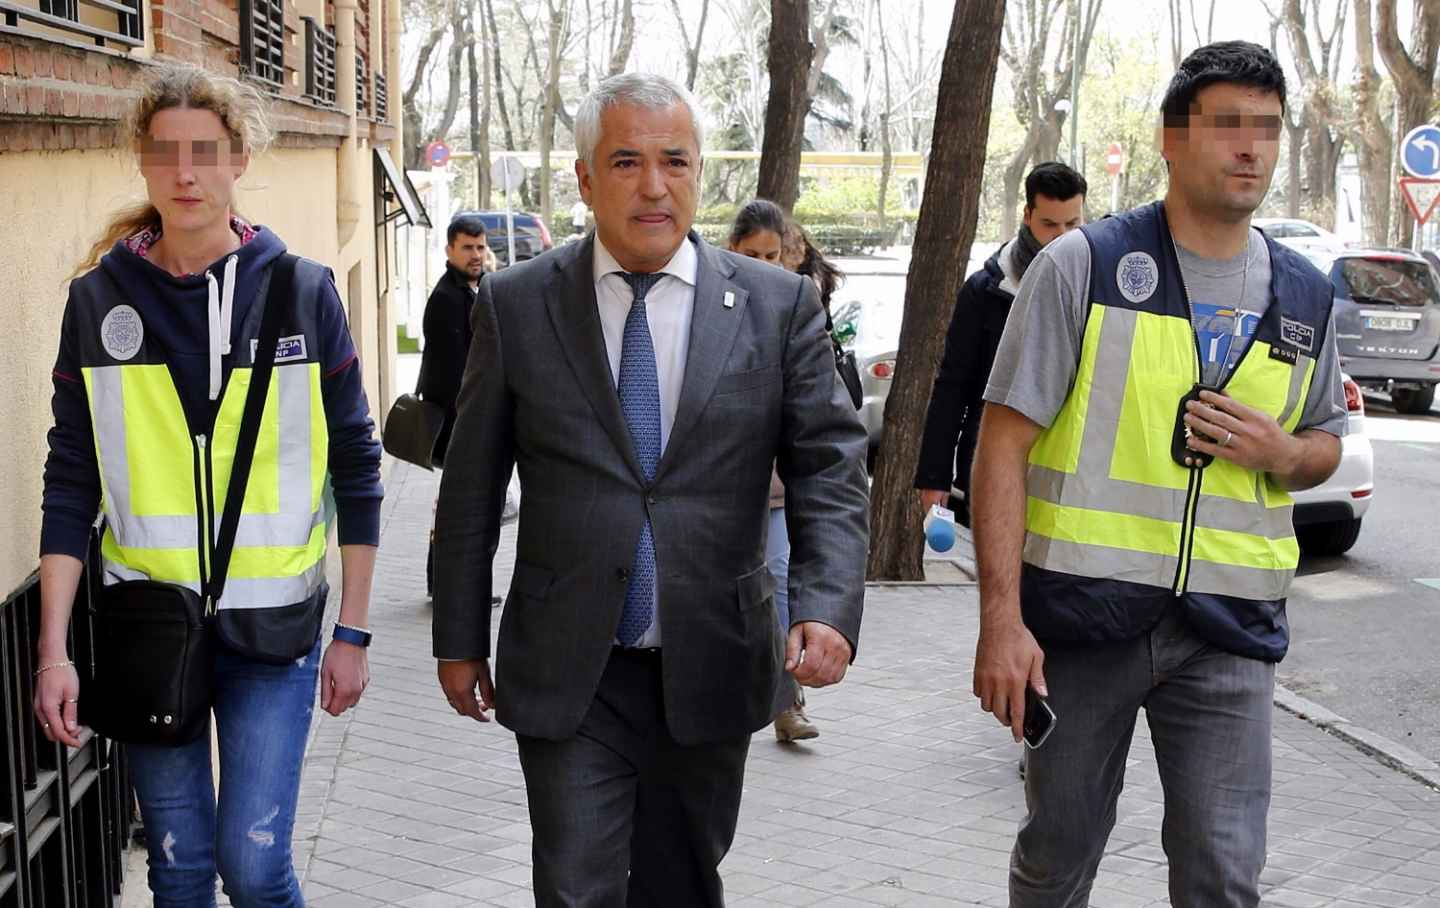 El líder de Ausbanc, Luis Pineda, en abril de 2016 cuando fue detenido en Madrid.